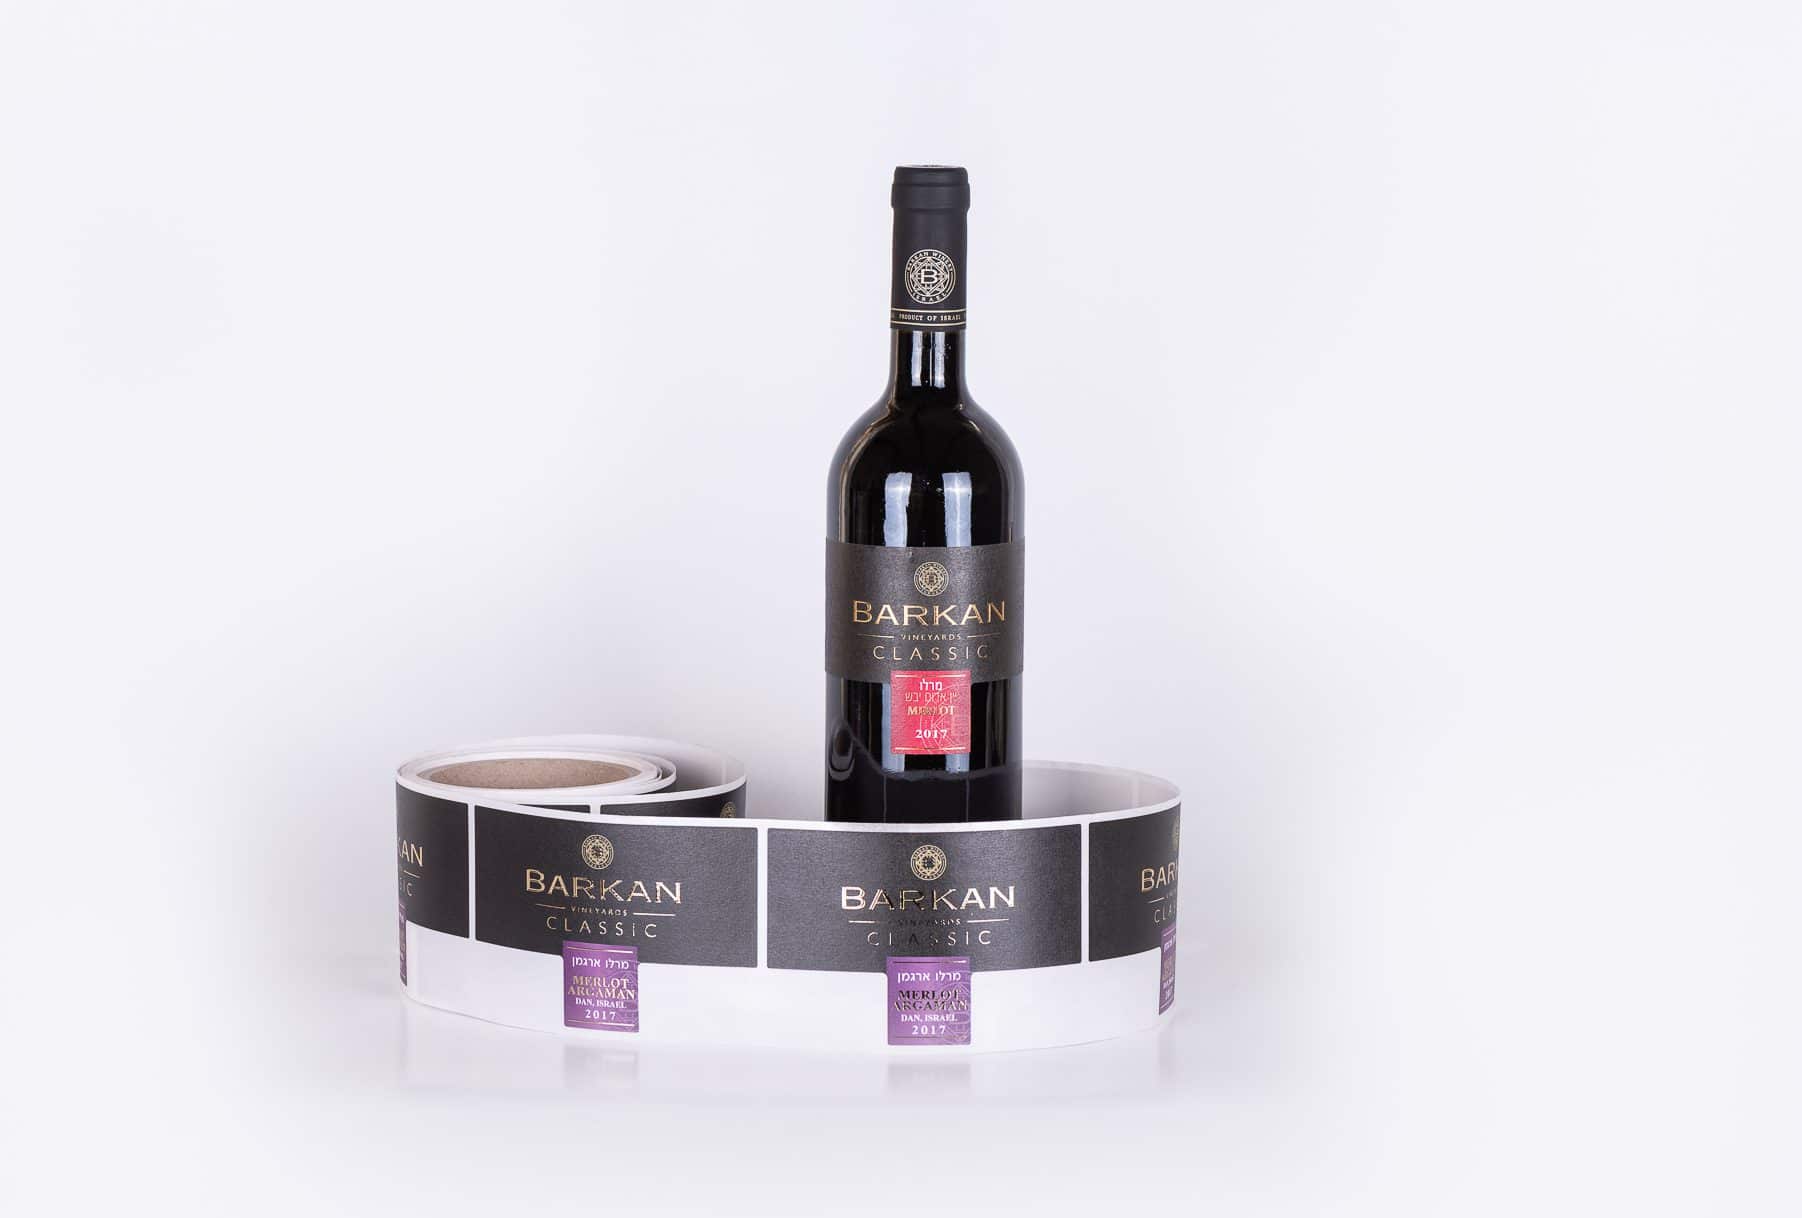 גליל תוויות לבקבוקים שהודפסו עבור יקב ברקן, יין אדום יבש מרלו, שנת בציר 2017. התוויות הינו בצבעי שחור ואדום והכתב מוזהב.